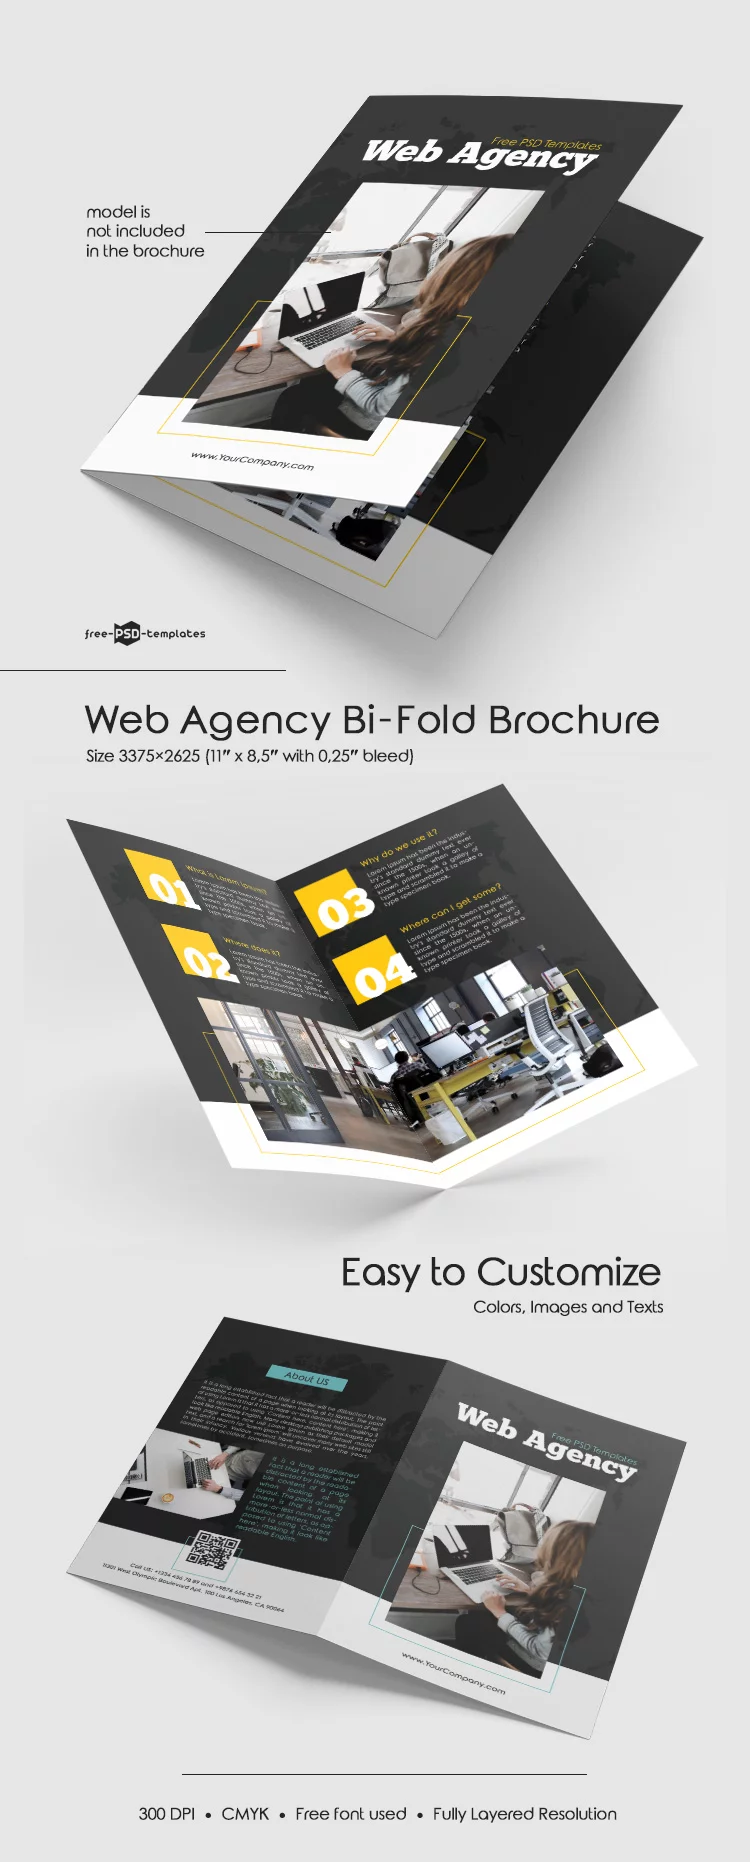 Free Web Agency Bi-Fold Brochure in PSD